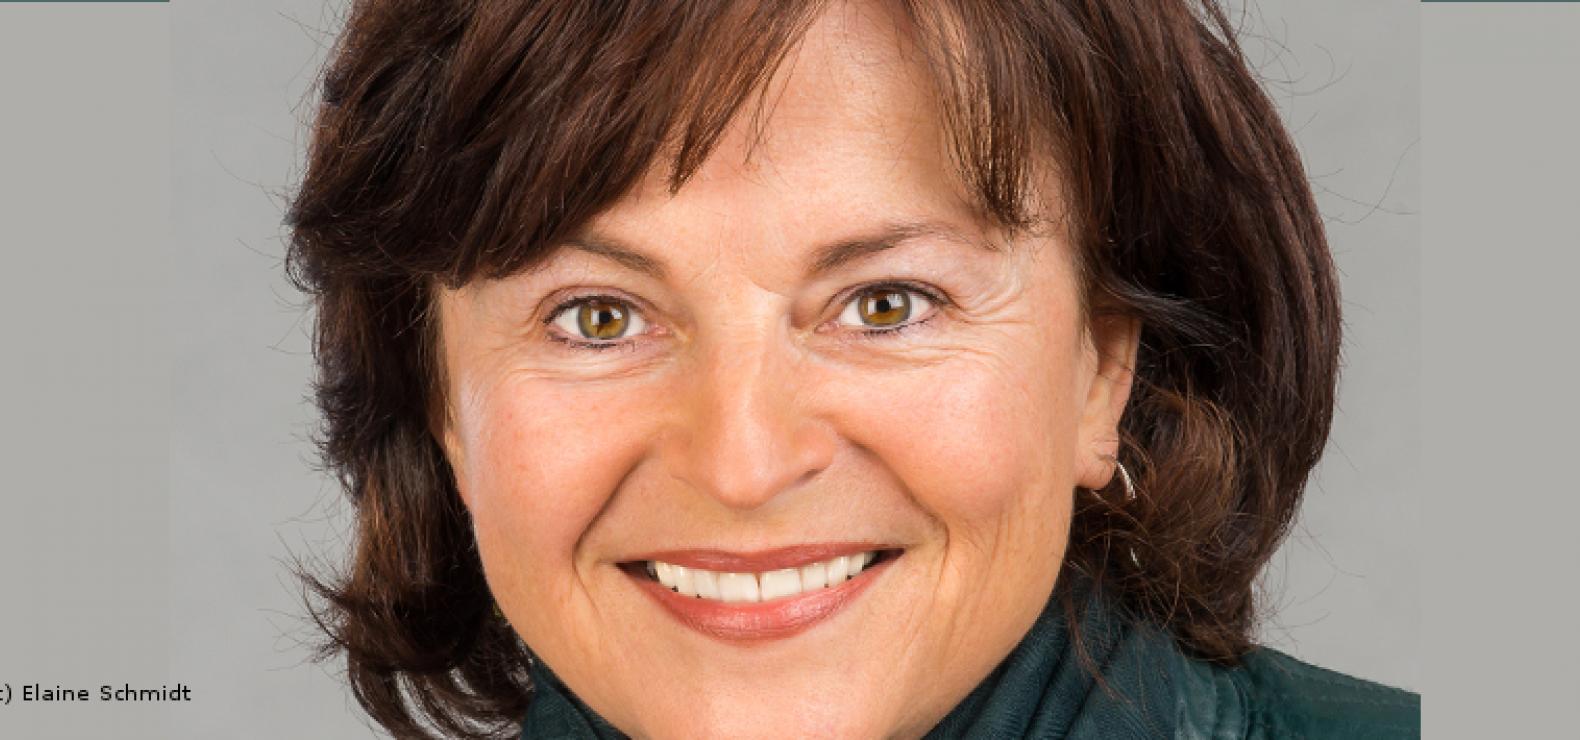 Die Bundesdrogenbeauftragte Marlene Mortler will Spritzentausch in Haft